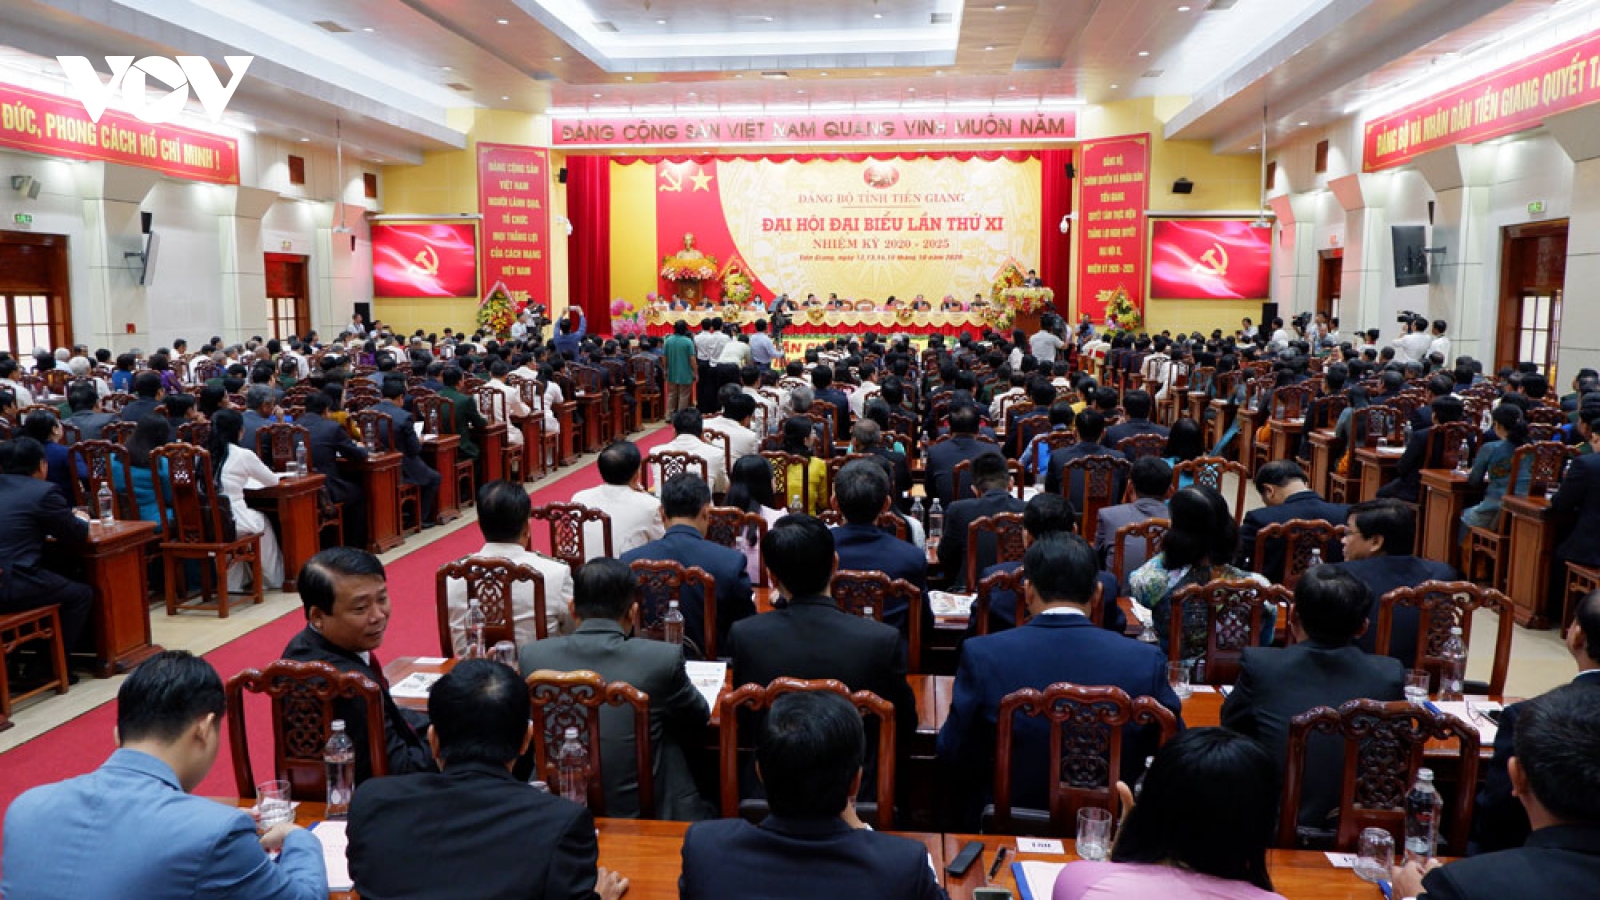 Tiền Giang phấn đấu trở thành tỉnh phát triển vùng kinh tế trọng điểm phía Nam